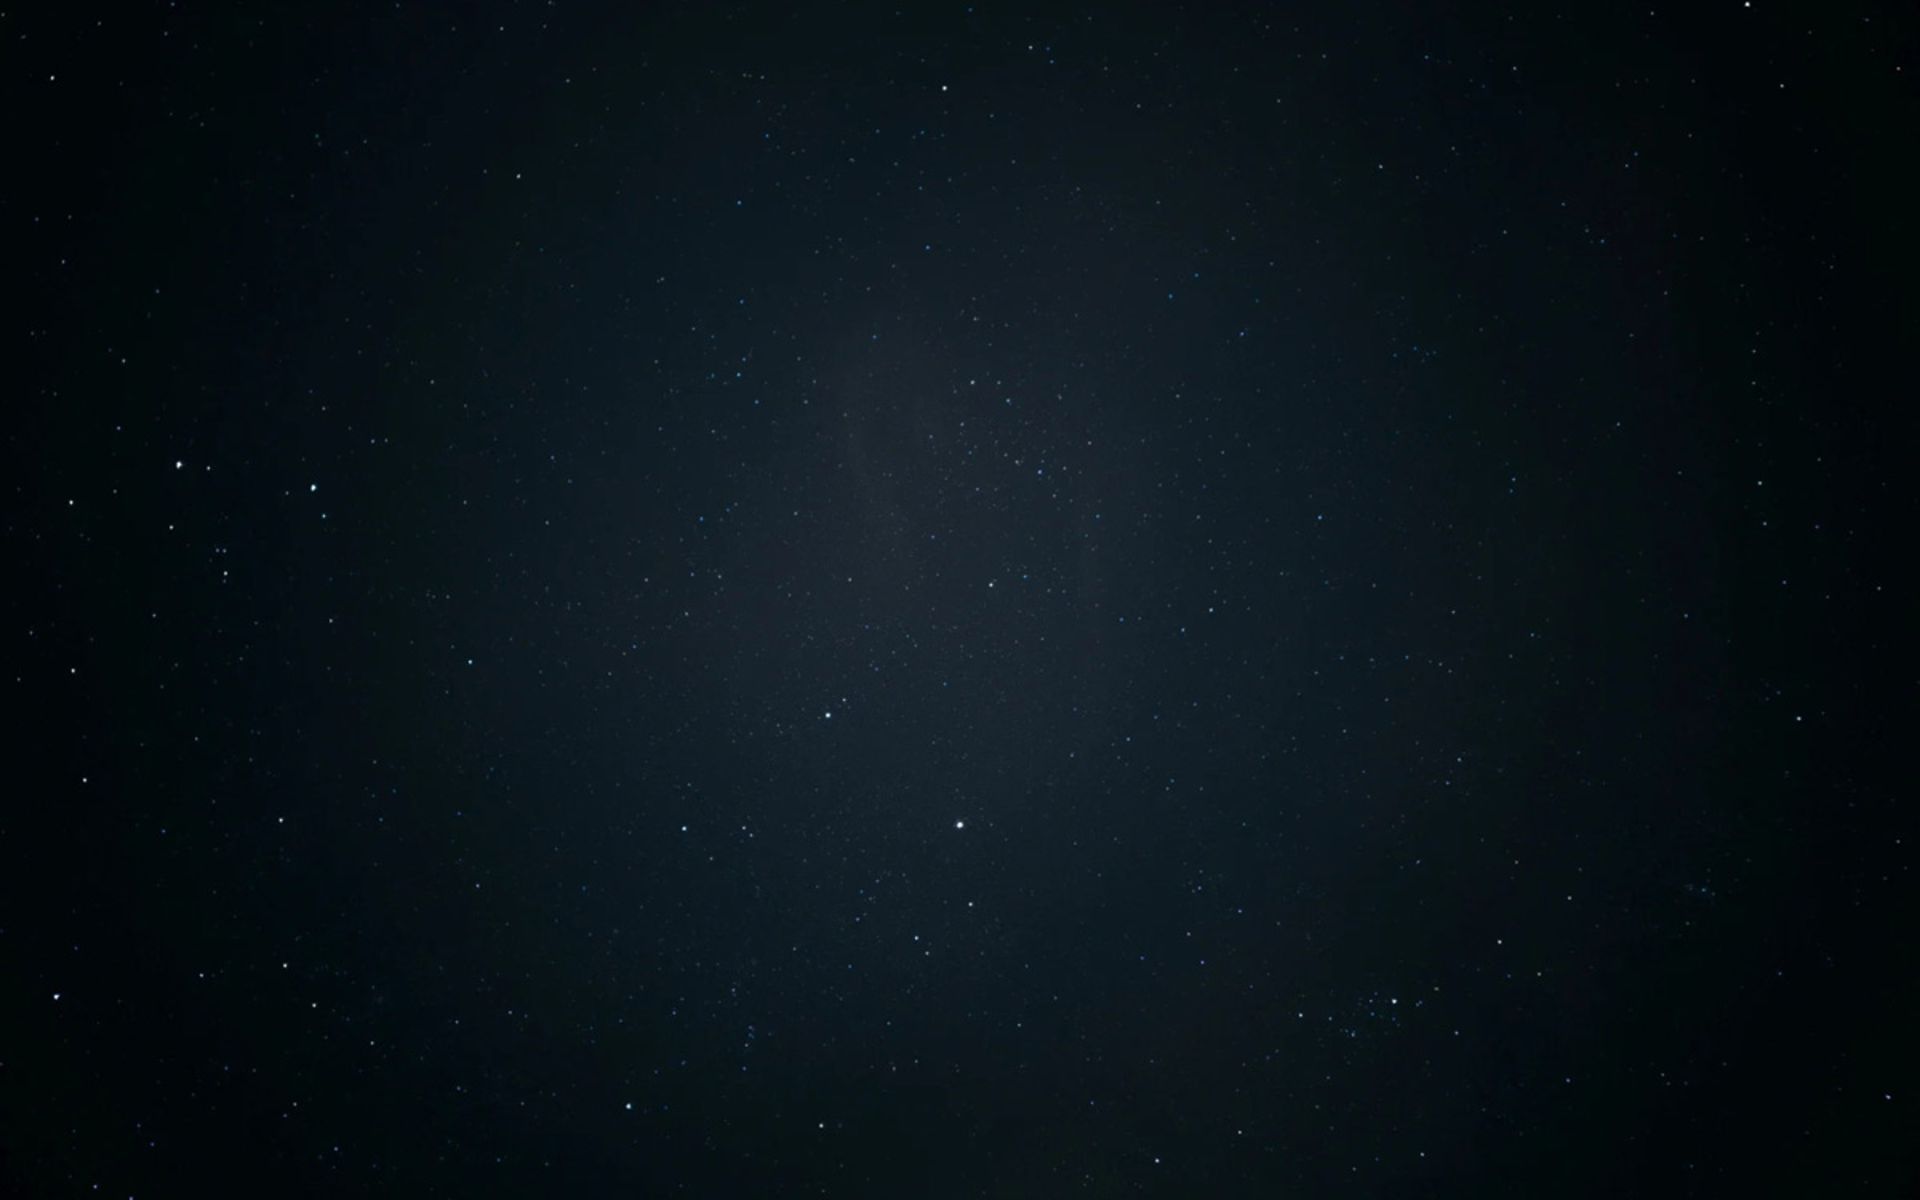 تصویر ثبت‌شده با قابلیت Astro Hyperlapse گلکسی اس ۲۳ اولترا در آسمان شب